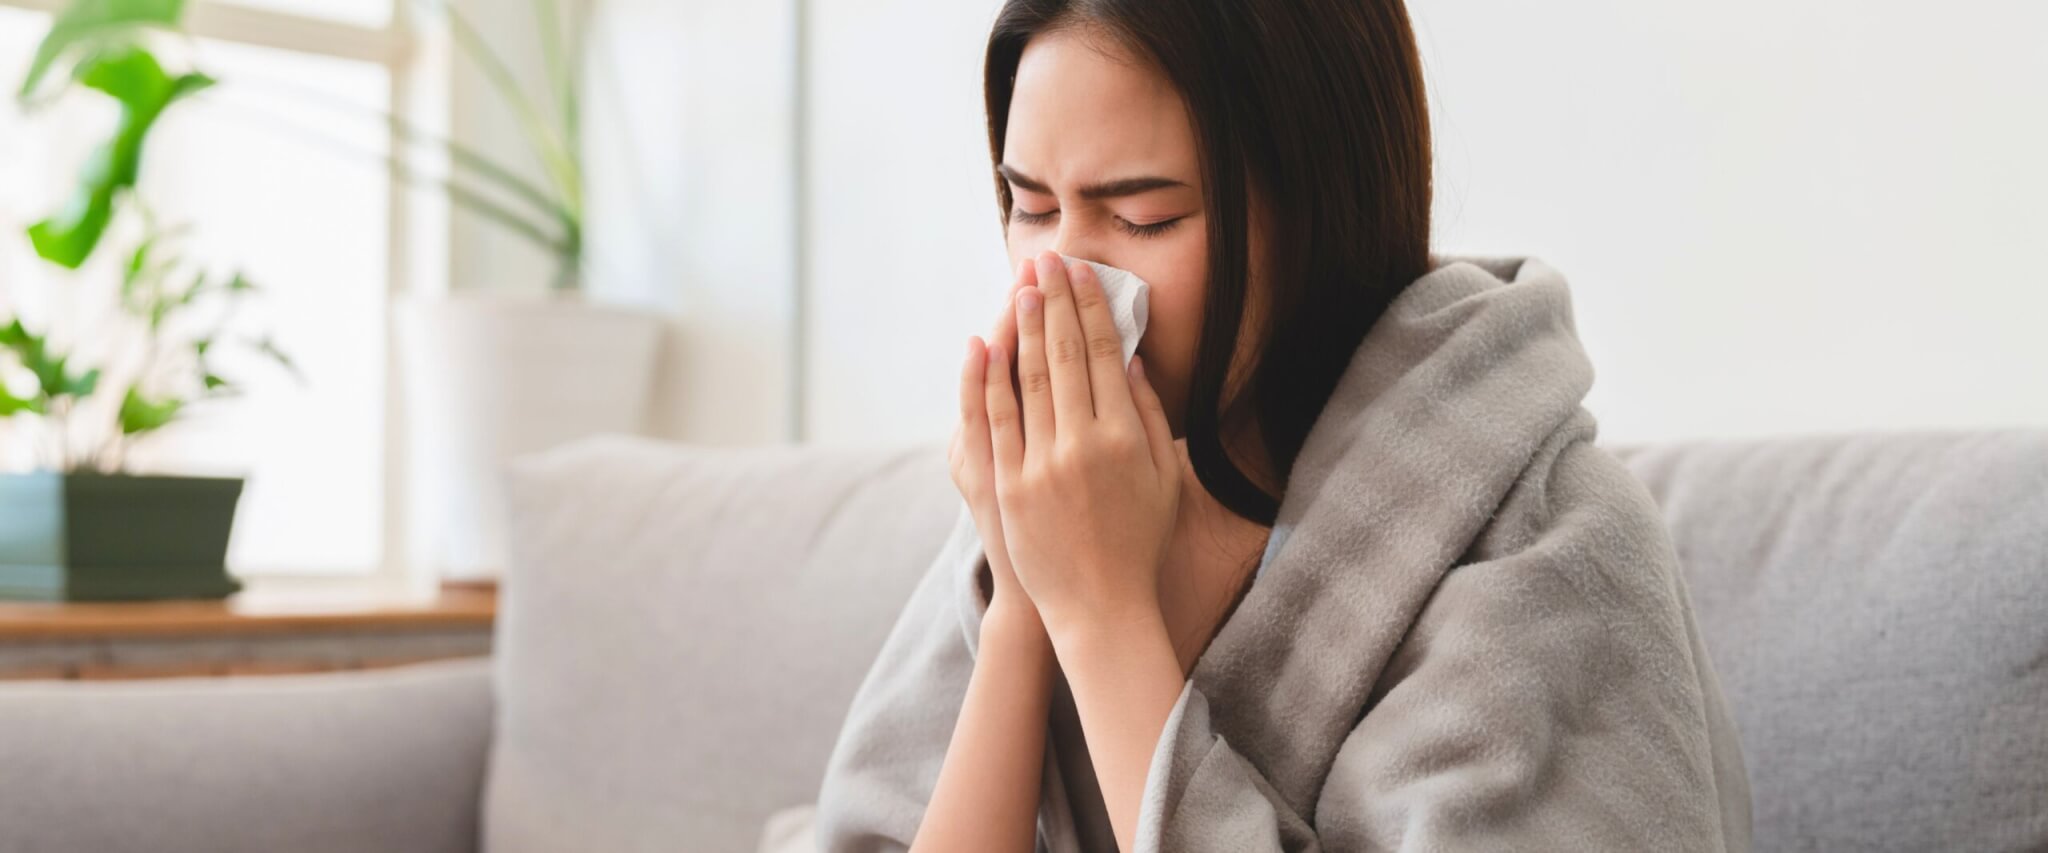 fachartikel grippe